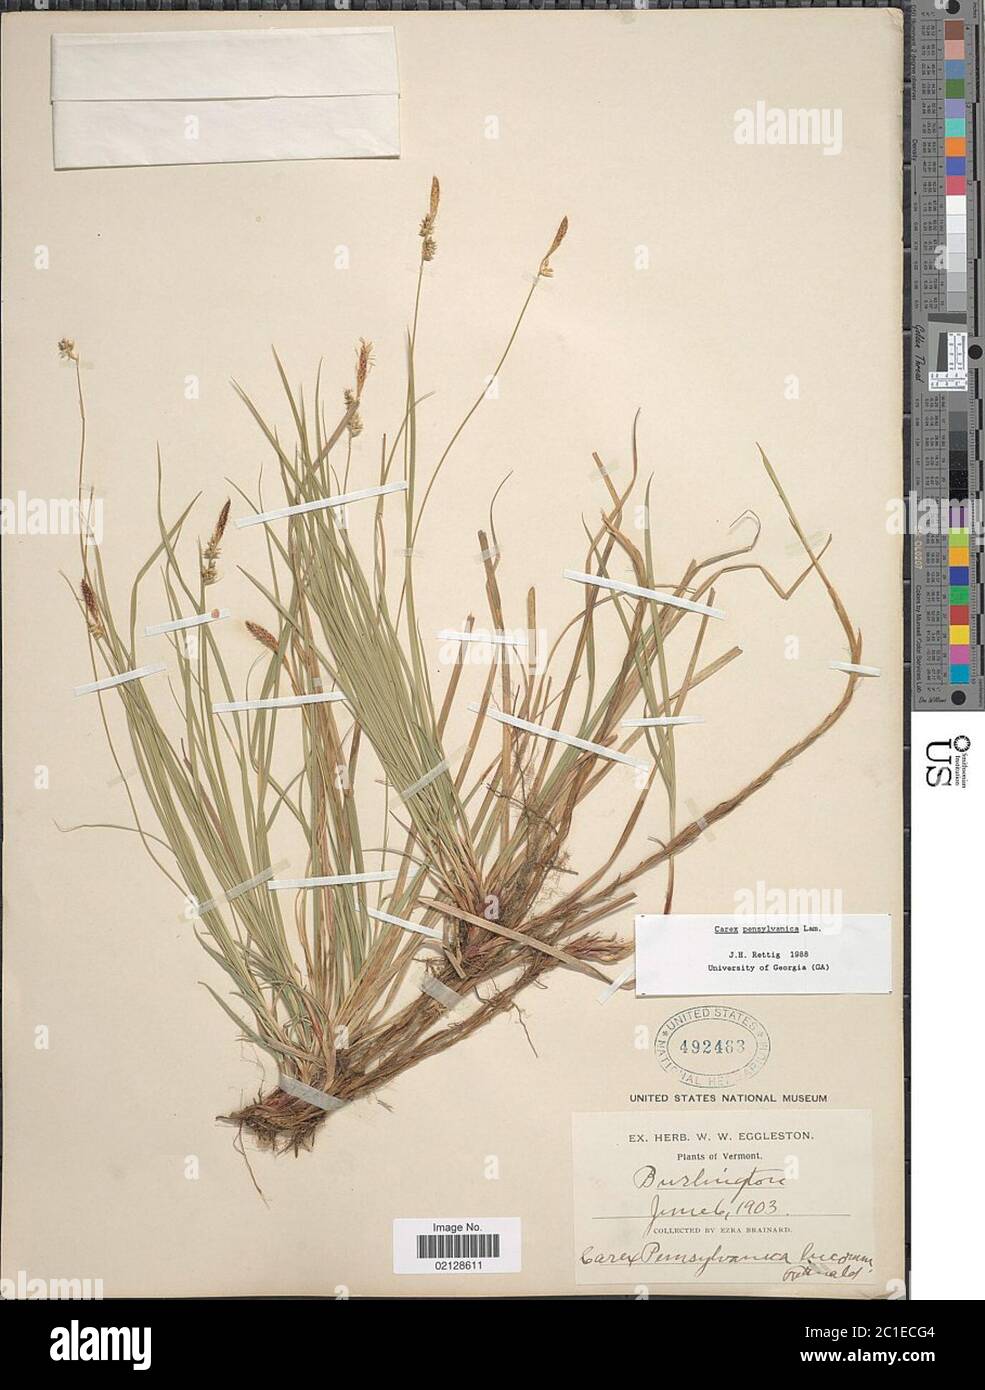 Carex pensylvanica Lam Carex pensylvanica Lam. Stock Photo